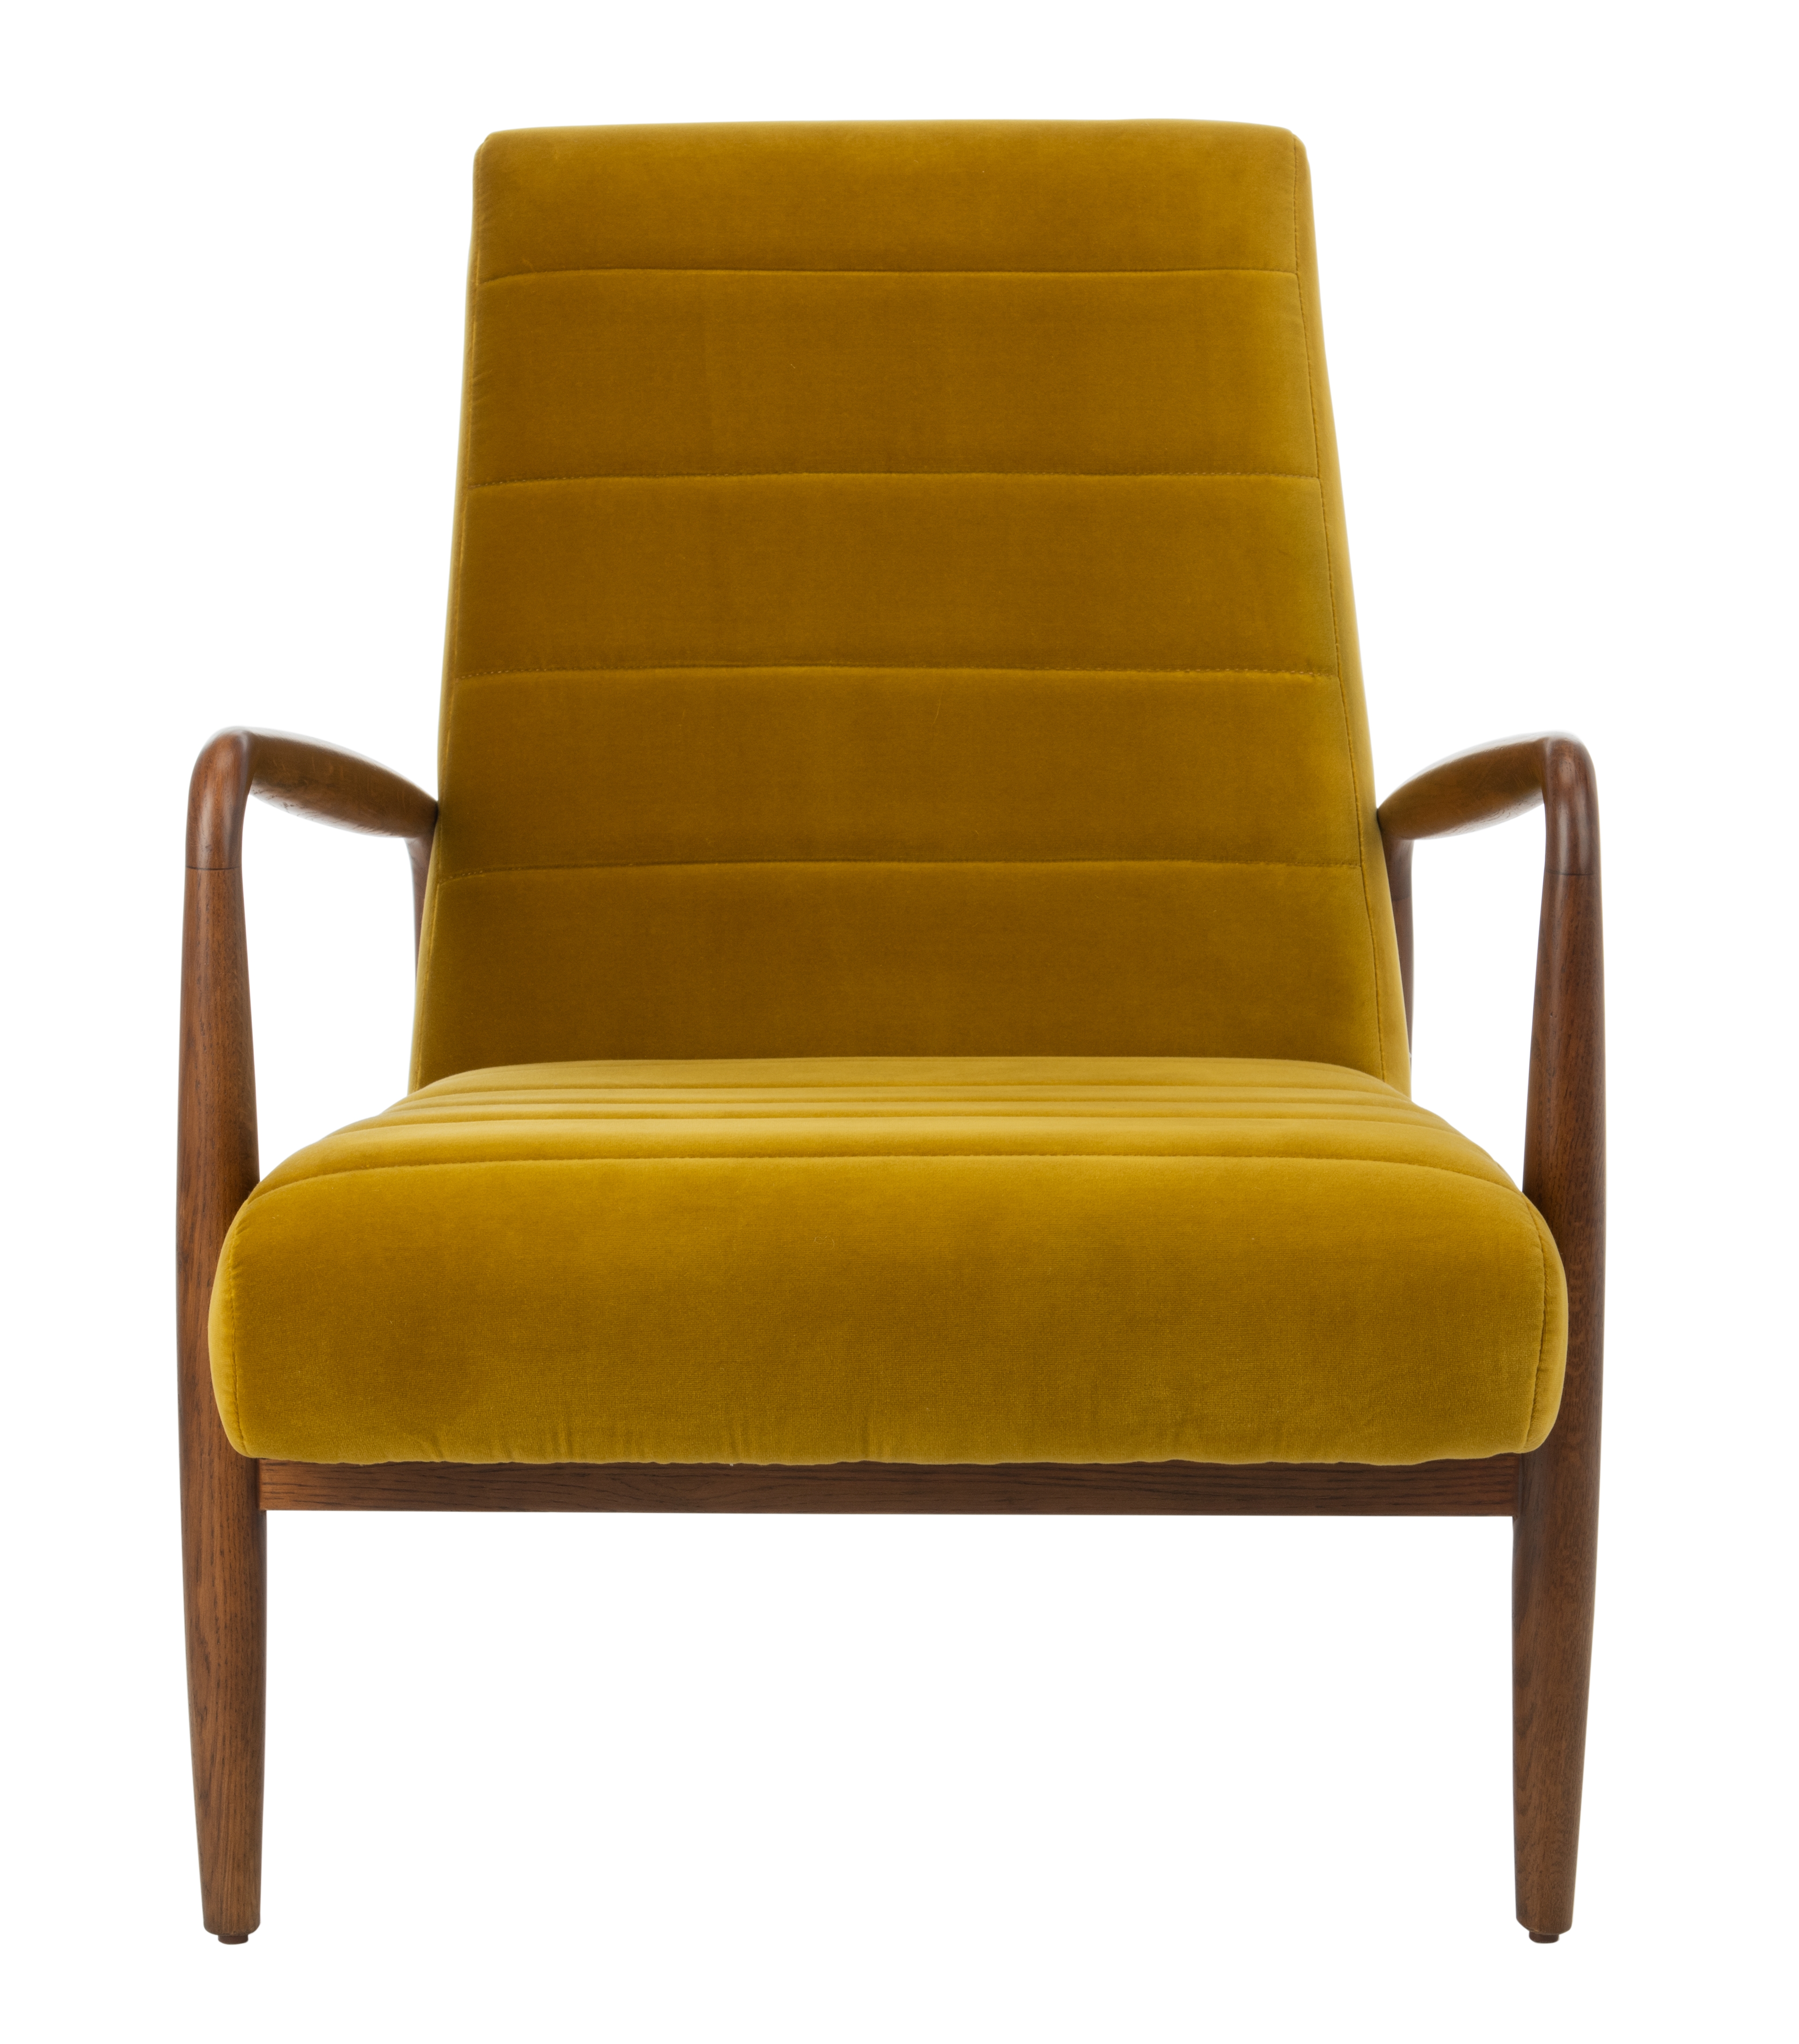 Willow Channel Tufted Arm Chair - Gold/Dark Walnut - Safavieh - Image 3